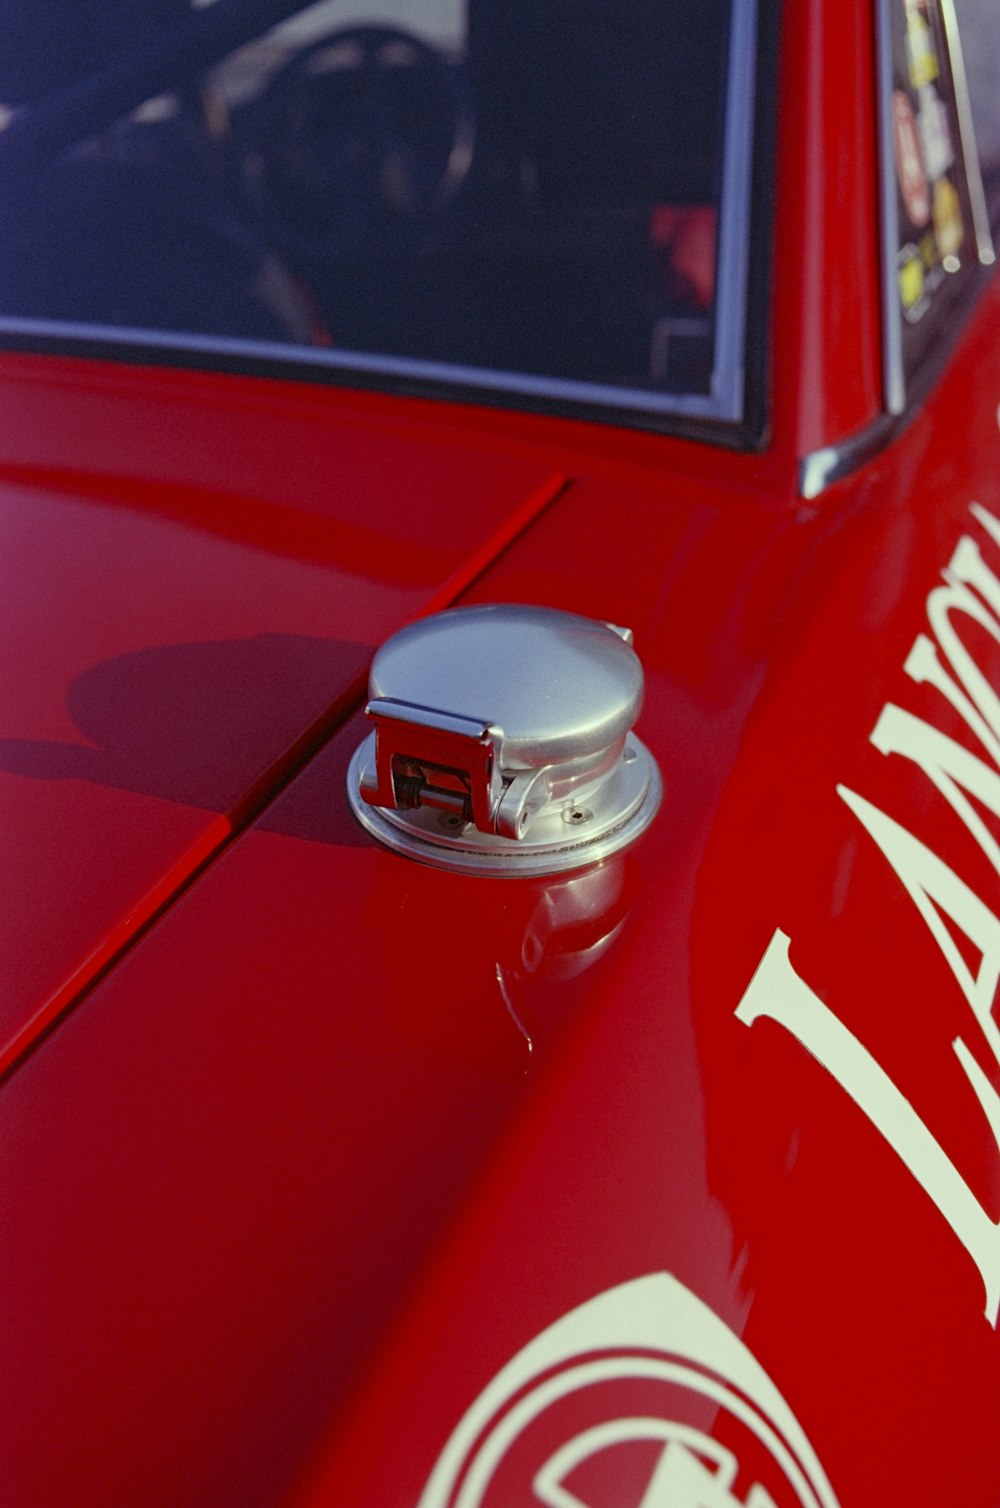 a close up of a car's door handle